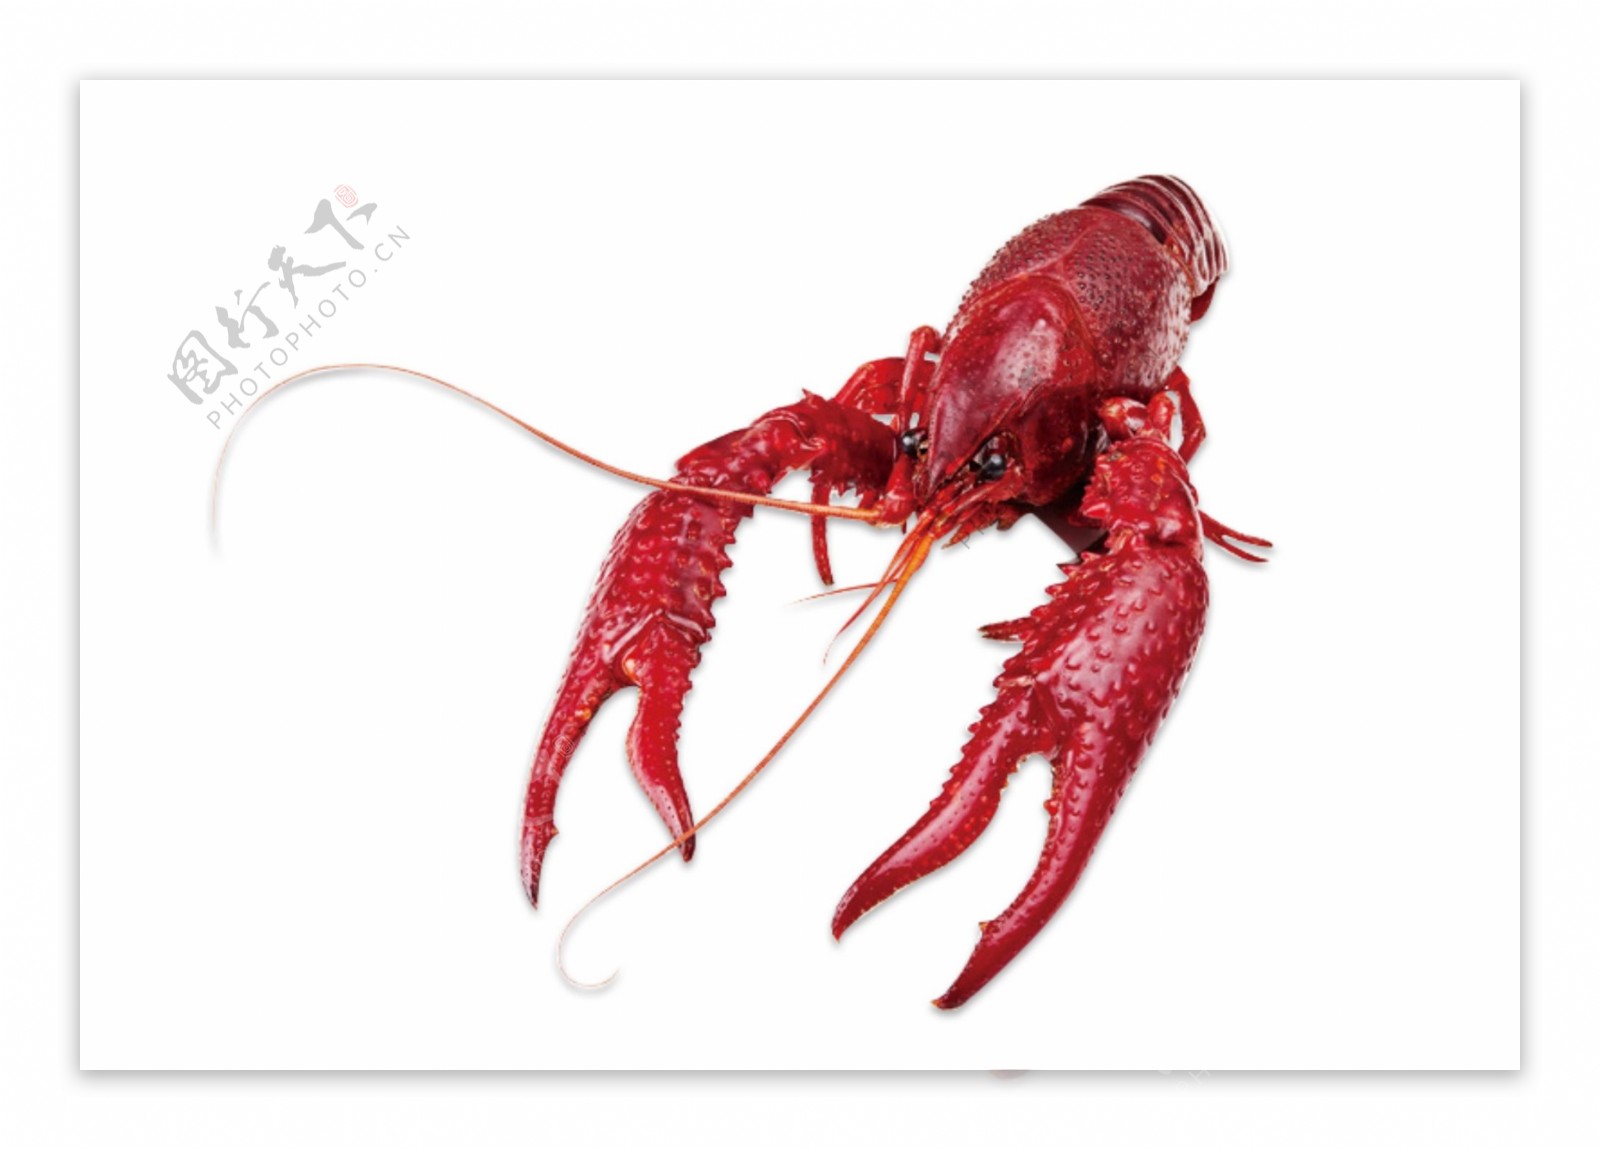 一只大龙虾美味食物动物